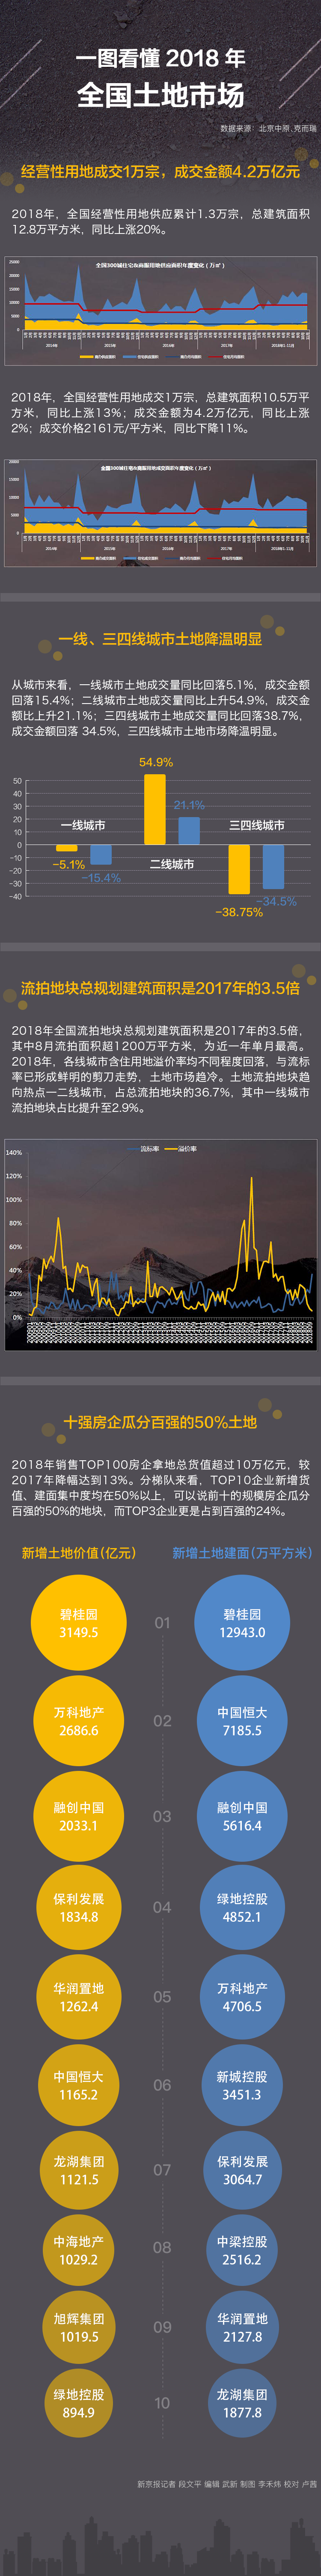 去年全国流拍土地总建面达上年3.5倍 碧桂园拿地最猛-中国网地产